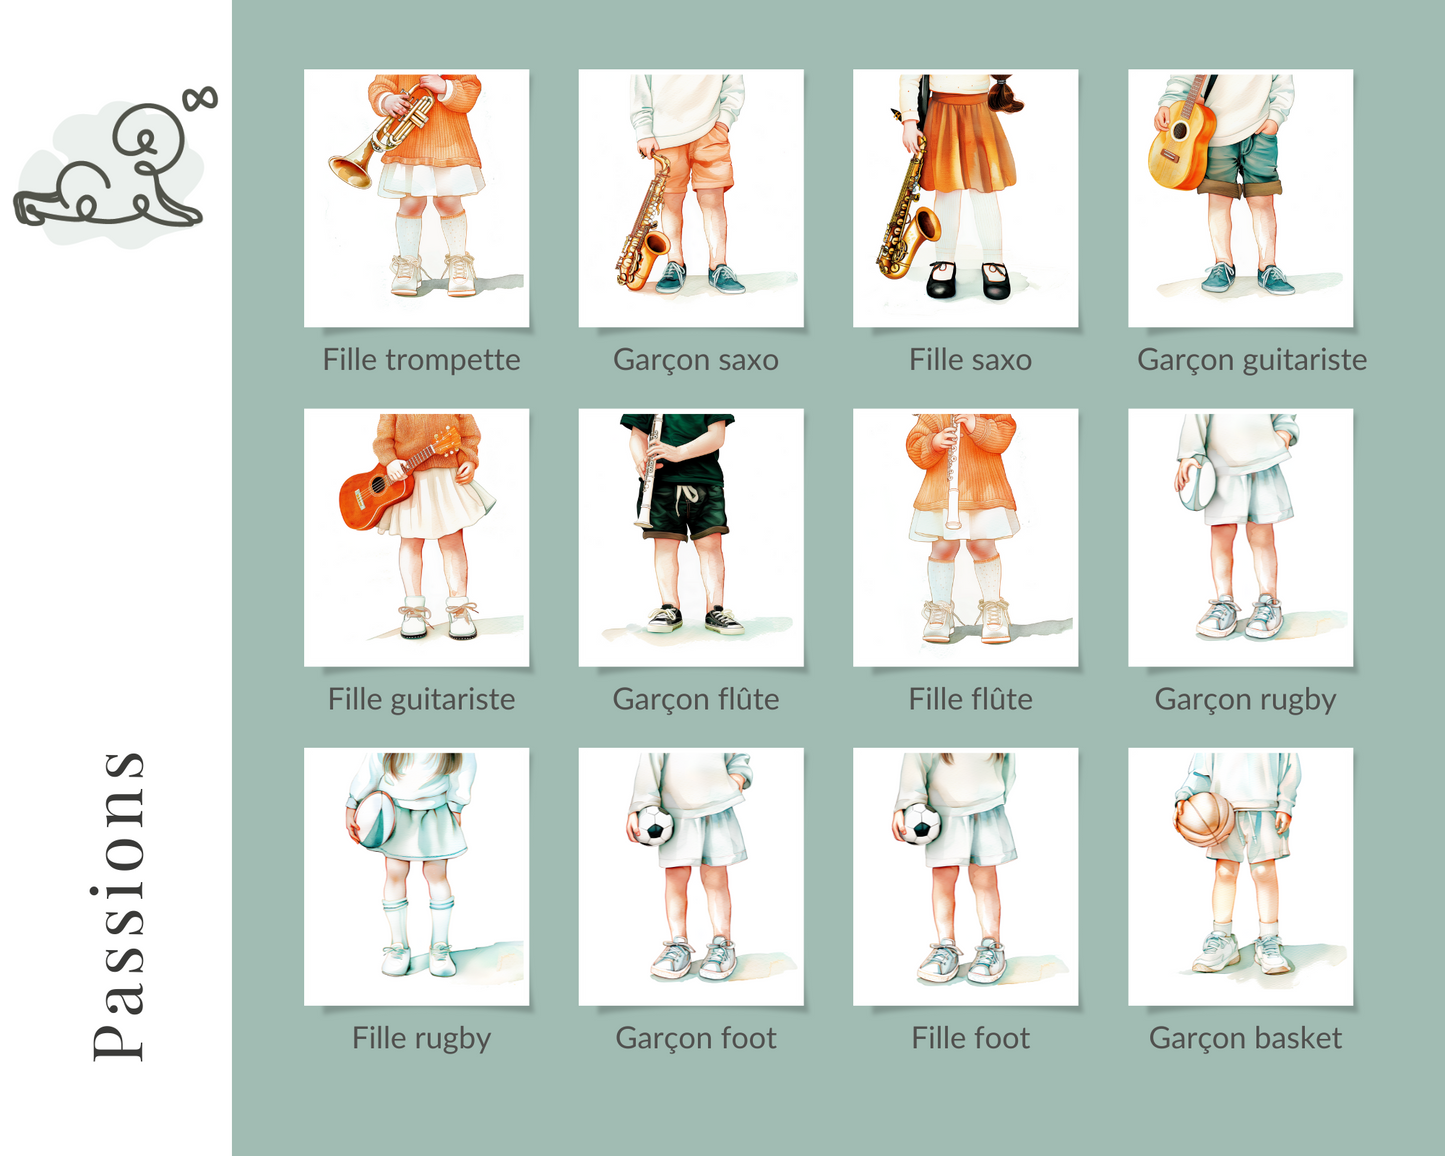 Illustration pour chambre d enfant, bébé, collection passions, basket, tennis, football, rugby, pétanque